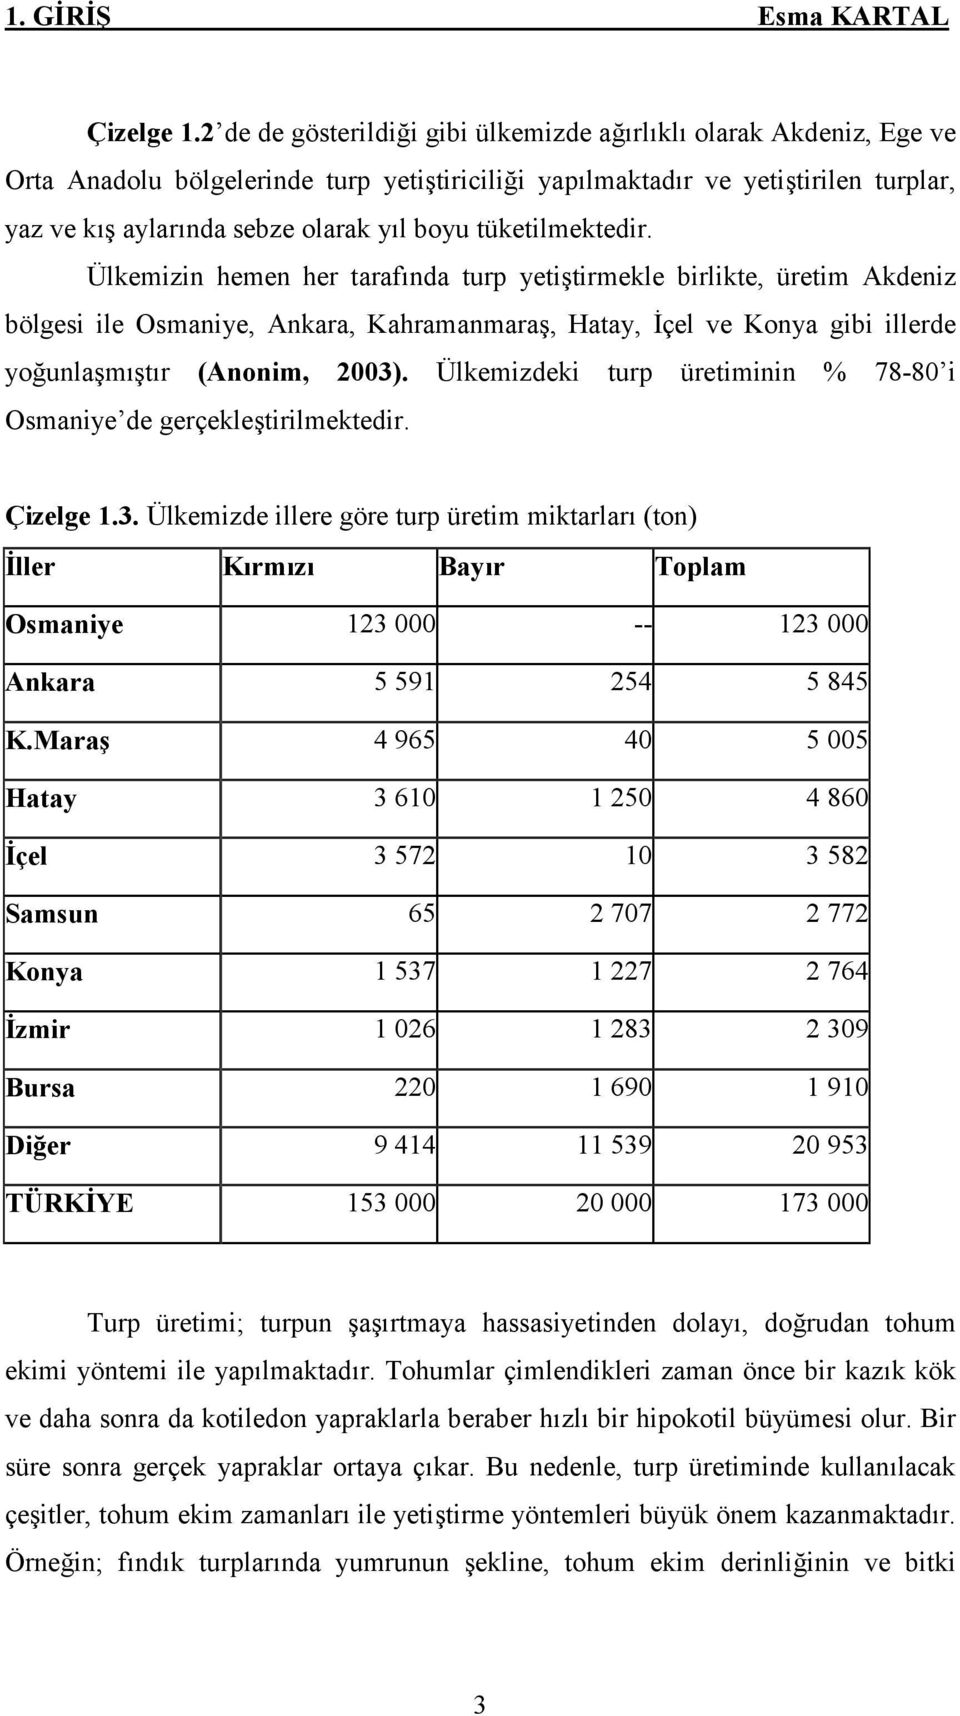 tüketilmektedir. Ülkemizin hemen her tarafında turp yetiştirmekle birlikte, üretim Akdeniz bölgesi ile Osmaniye, Ankara, Kahramanmaraş, Hatay, İçel ve Konya gibi illerde yoğunlaşmıştır (Anonim, 2003).